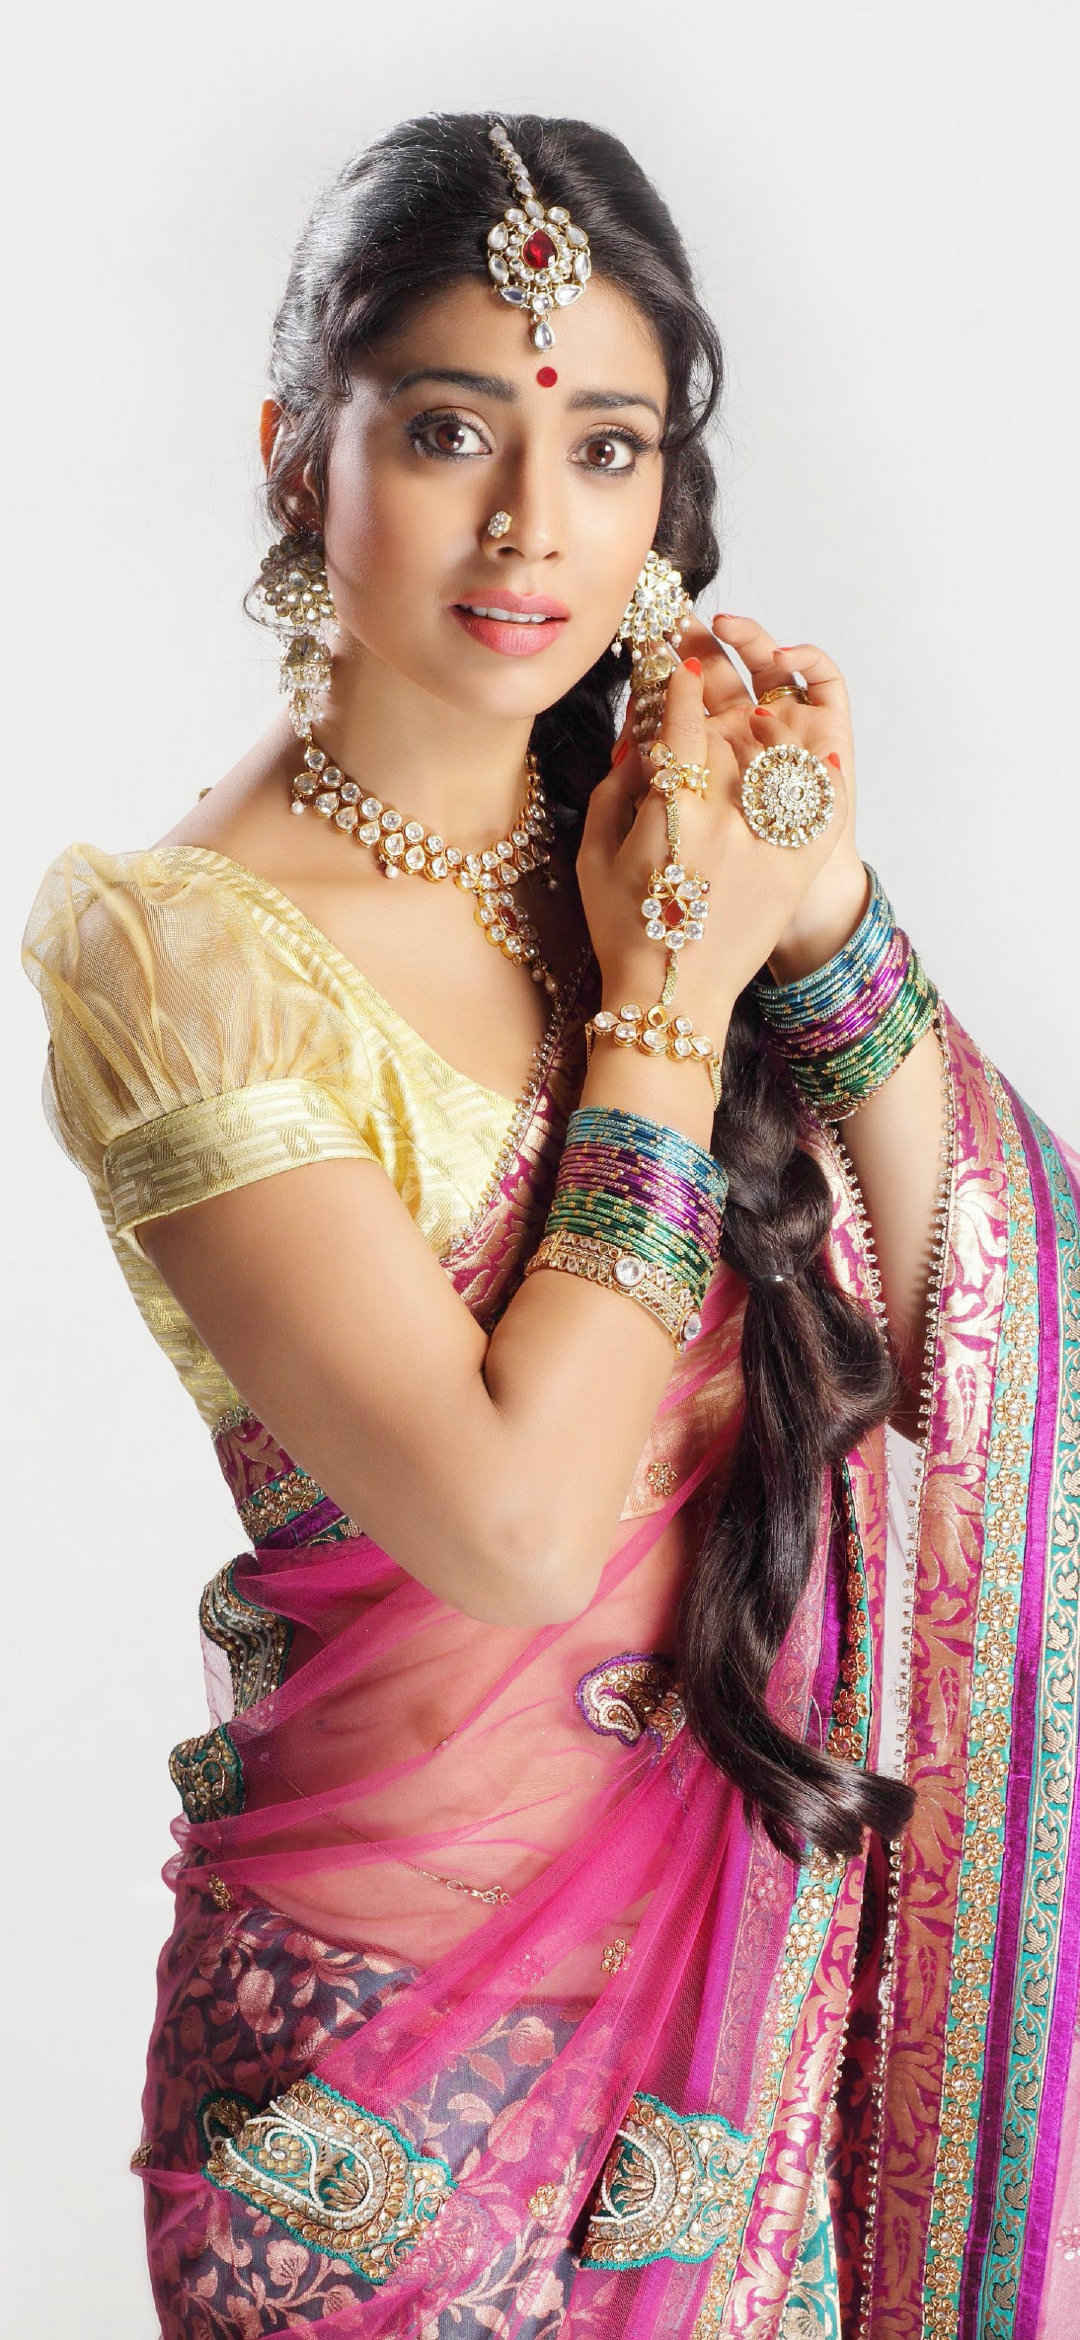 身着印度传统服饰的印度美女手机壁纸